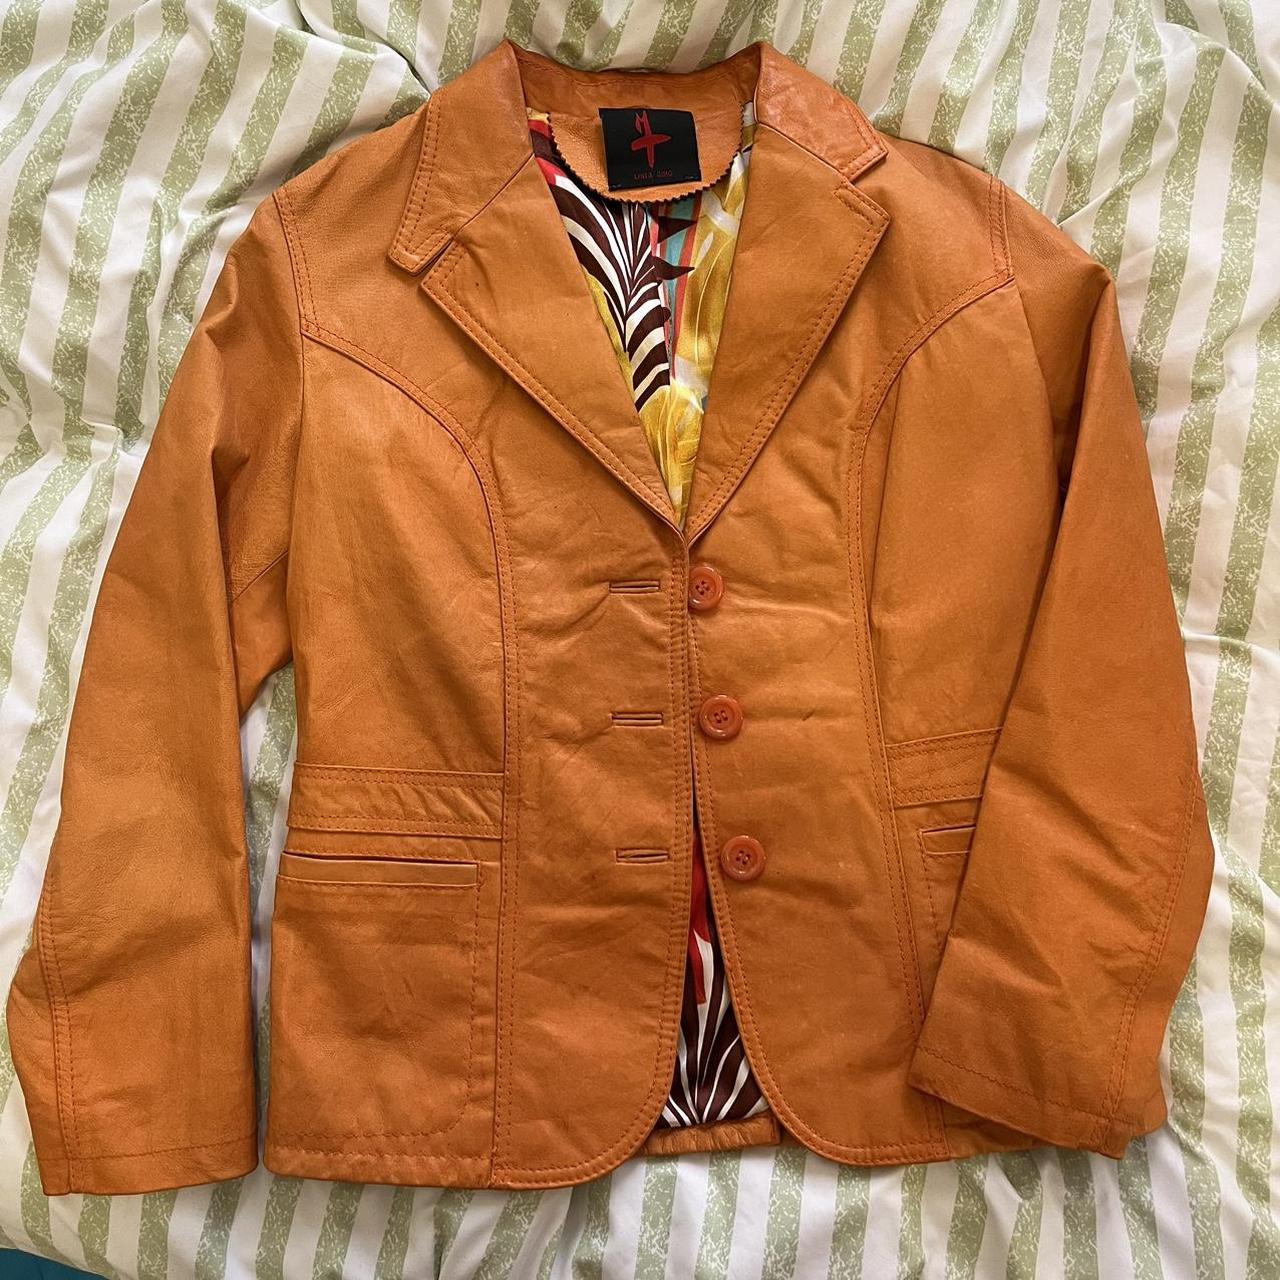 Orange Vintage Leather Jacket. Amazing jacket... - Depop